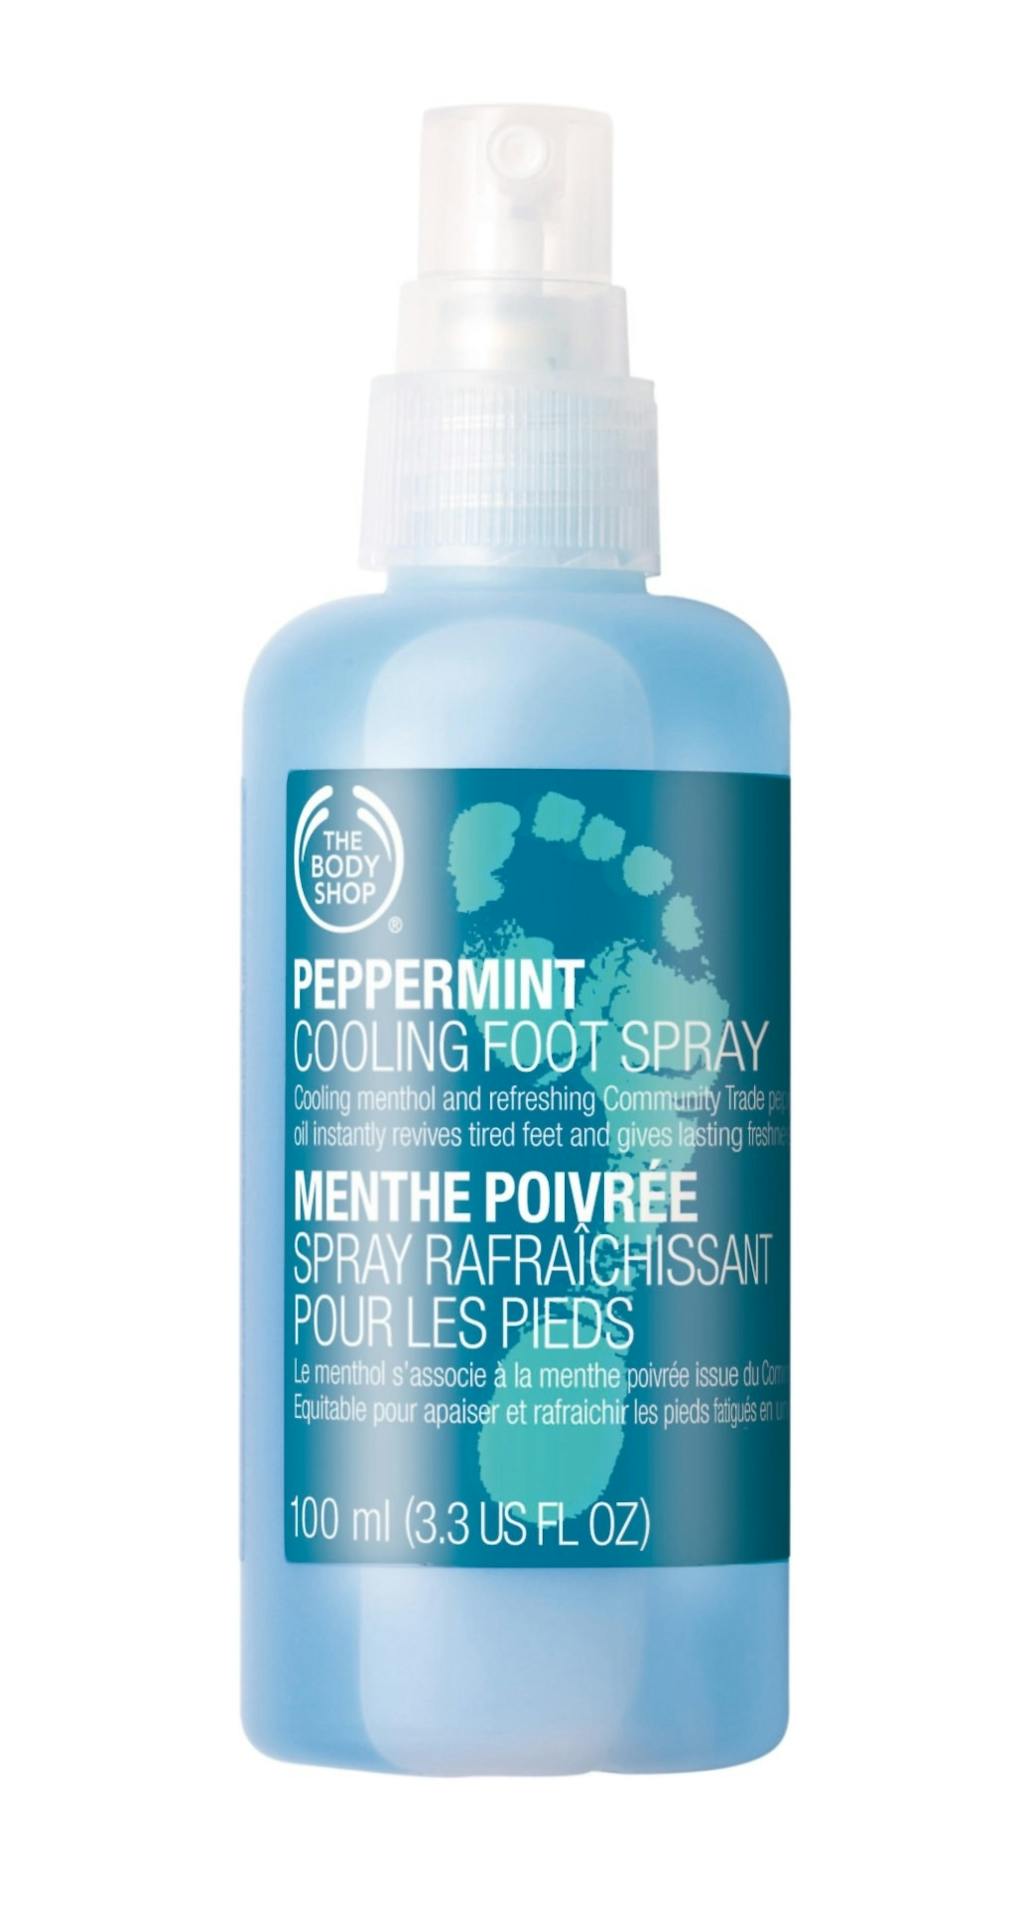 Avkjøl varme og hovne føtter med en kjølende fotspray. Peppermint Cooling Foot Spray fra The Body Shop, 169 kroner.